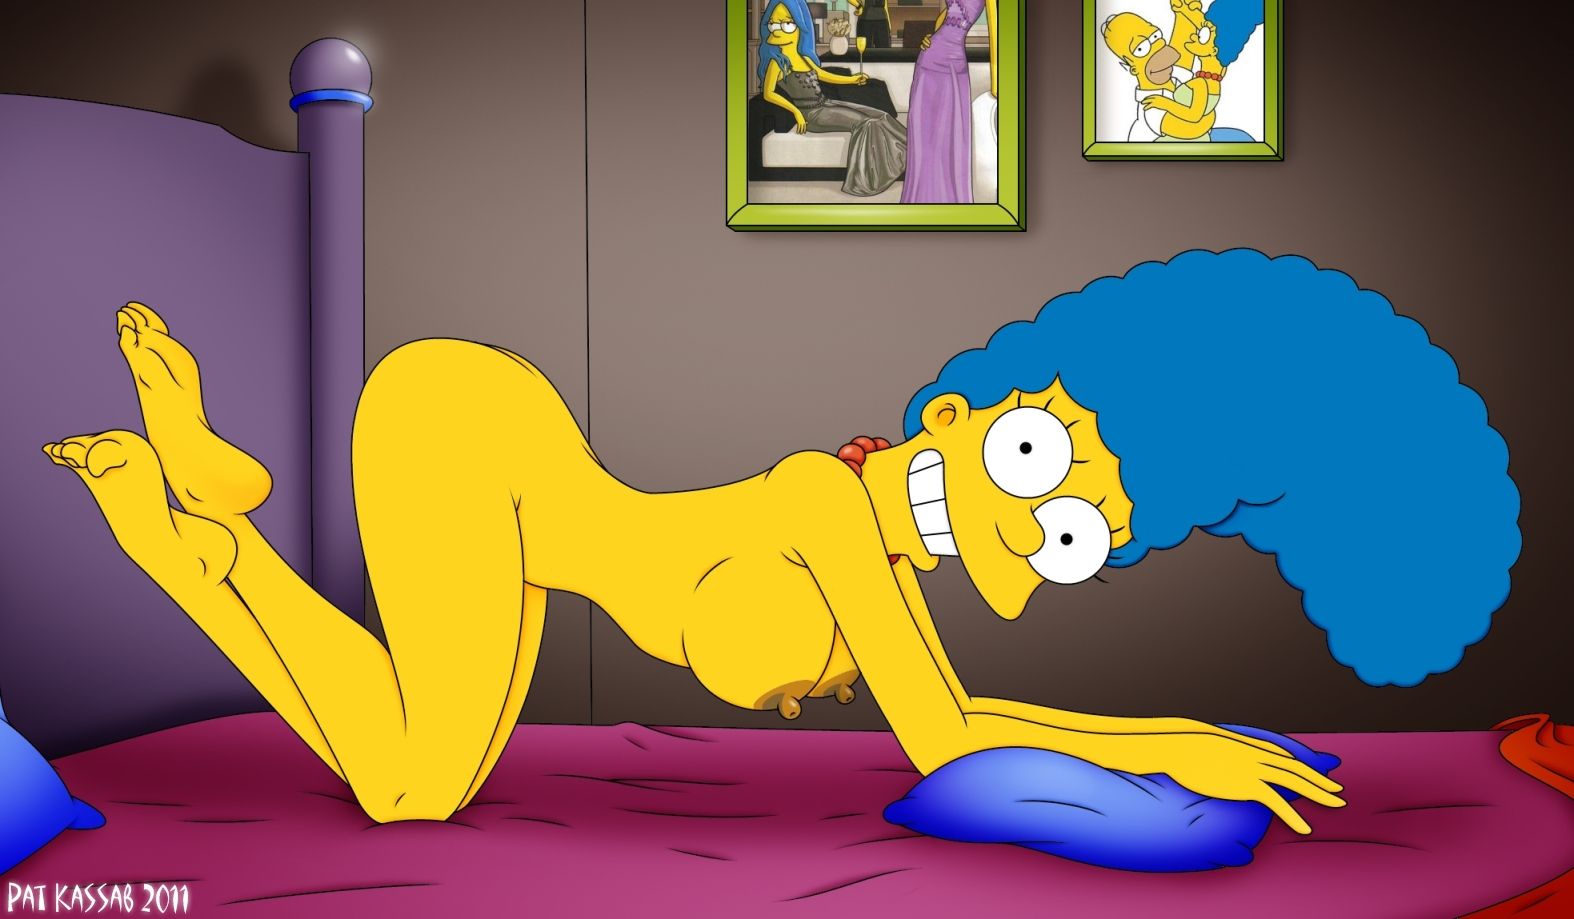 Cenas de sexo com Marge Simpsons fodendo